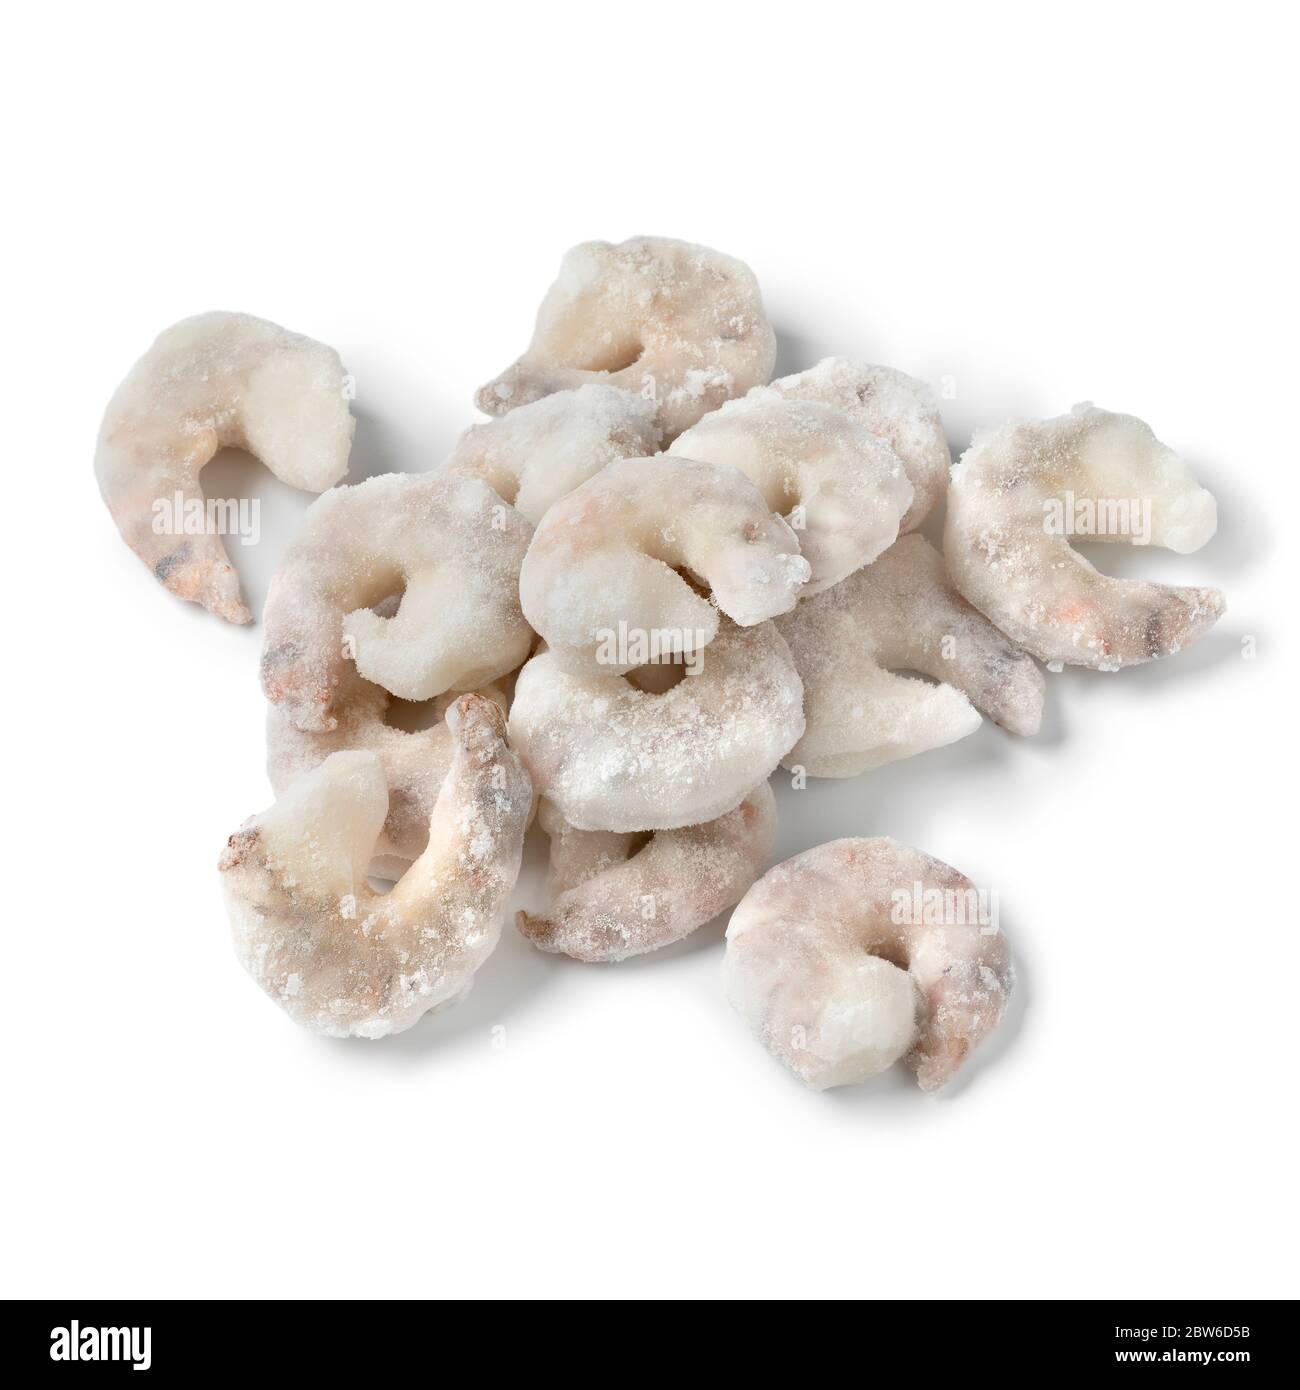 Tas de crevettes crues congelées isolées sur fond blanc Banque D'Images